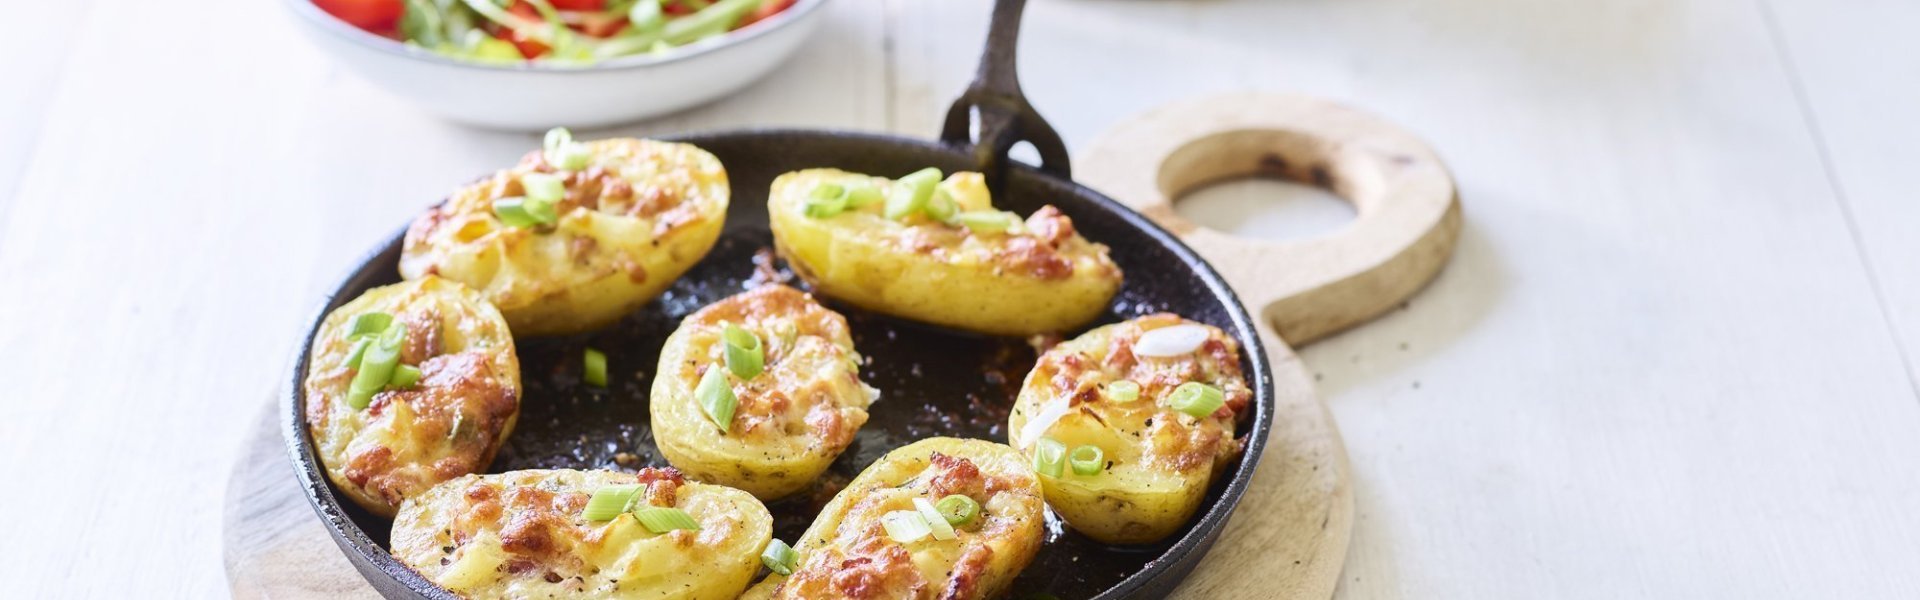 7 gevulde aardappelen liggen op een zwarte vuurvaste pan, ze zijn gevuld met aardappelkruim, kaas en spekblokjes. Er ligt een handdoek achteraan in beeld en een slaatje met tomaatjes. 